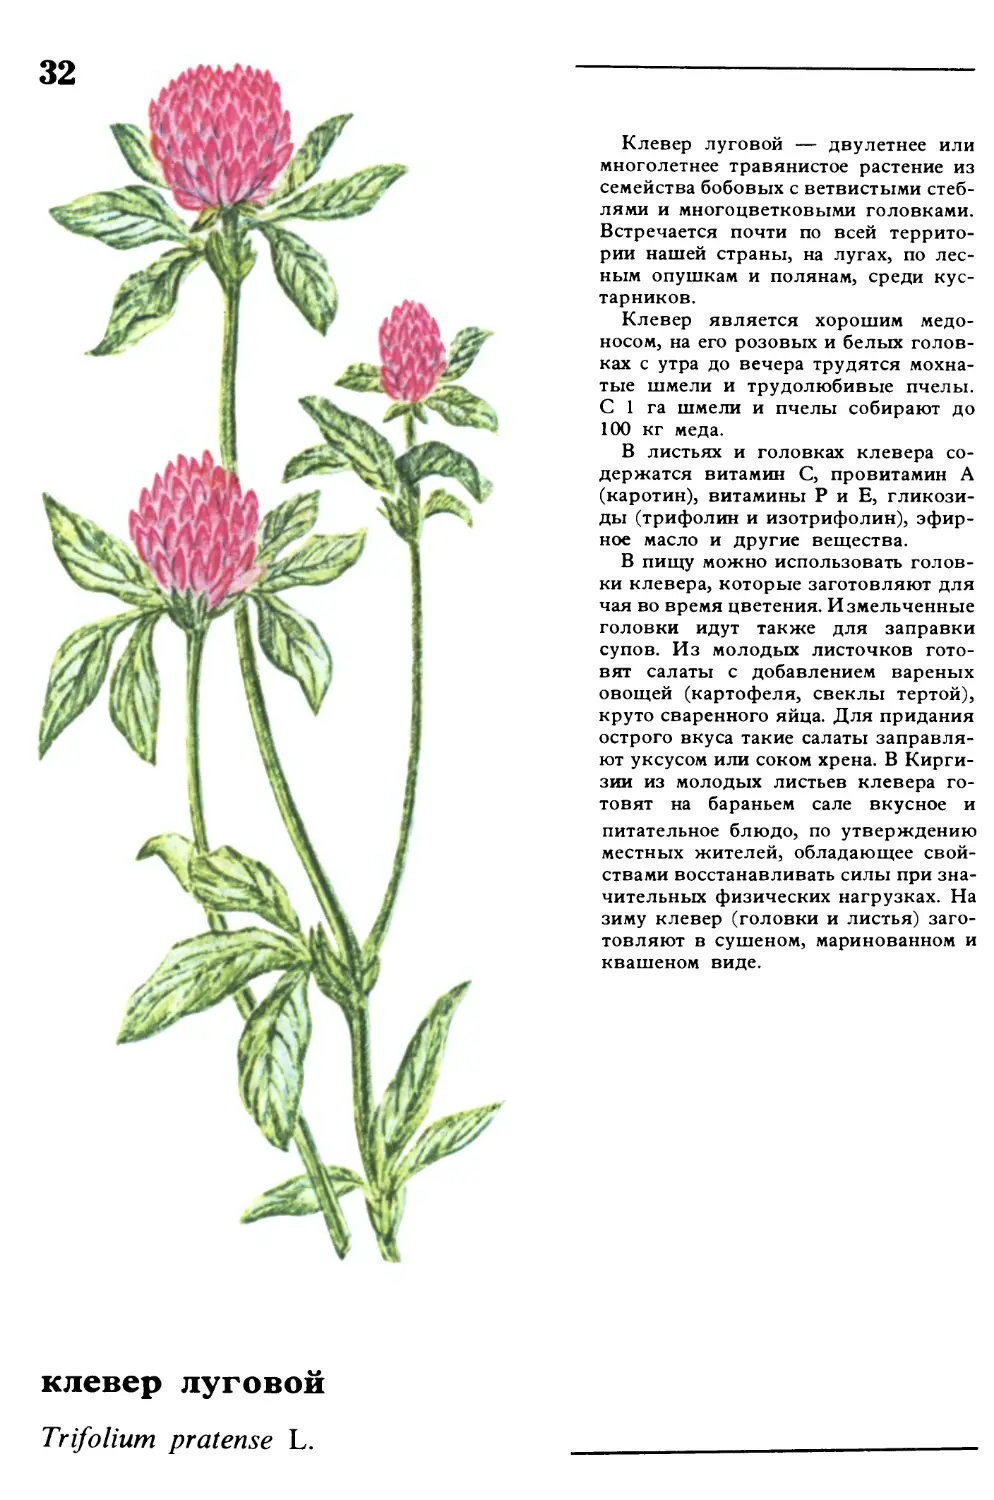 Клевер луговой
клевер луговой
Trifolium pratense L.